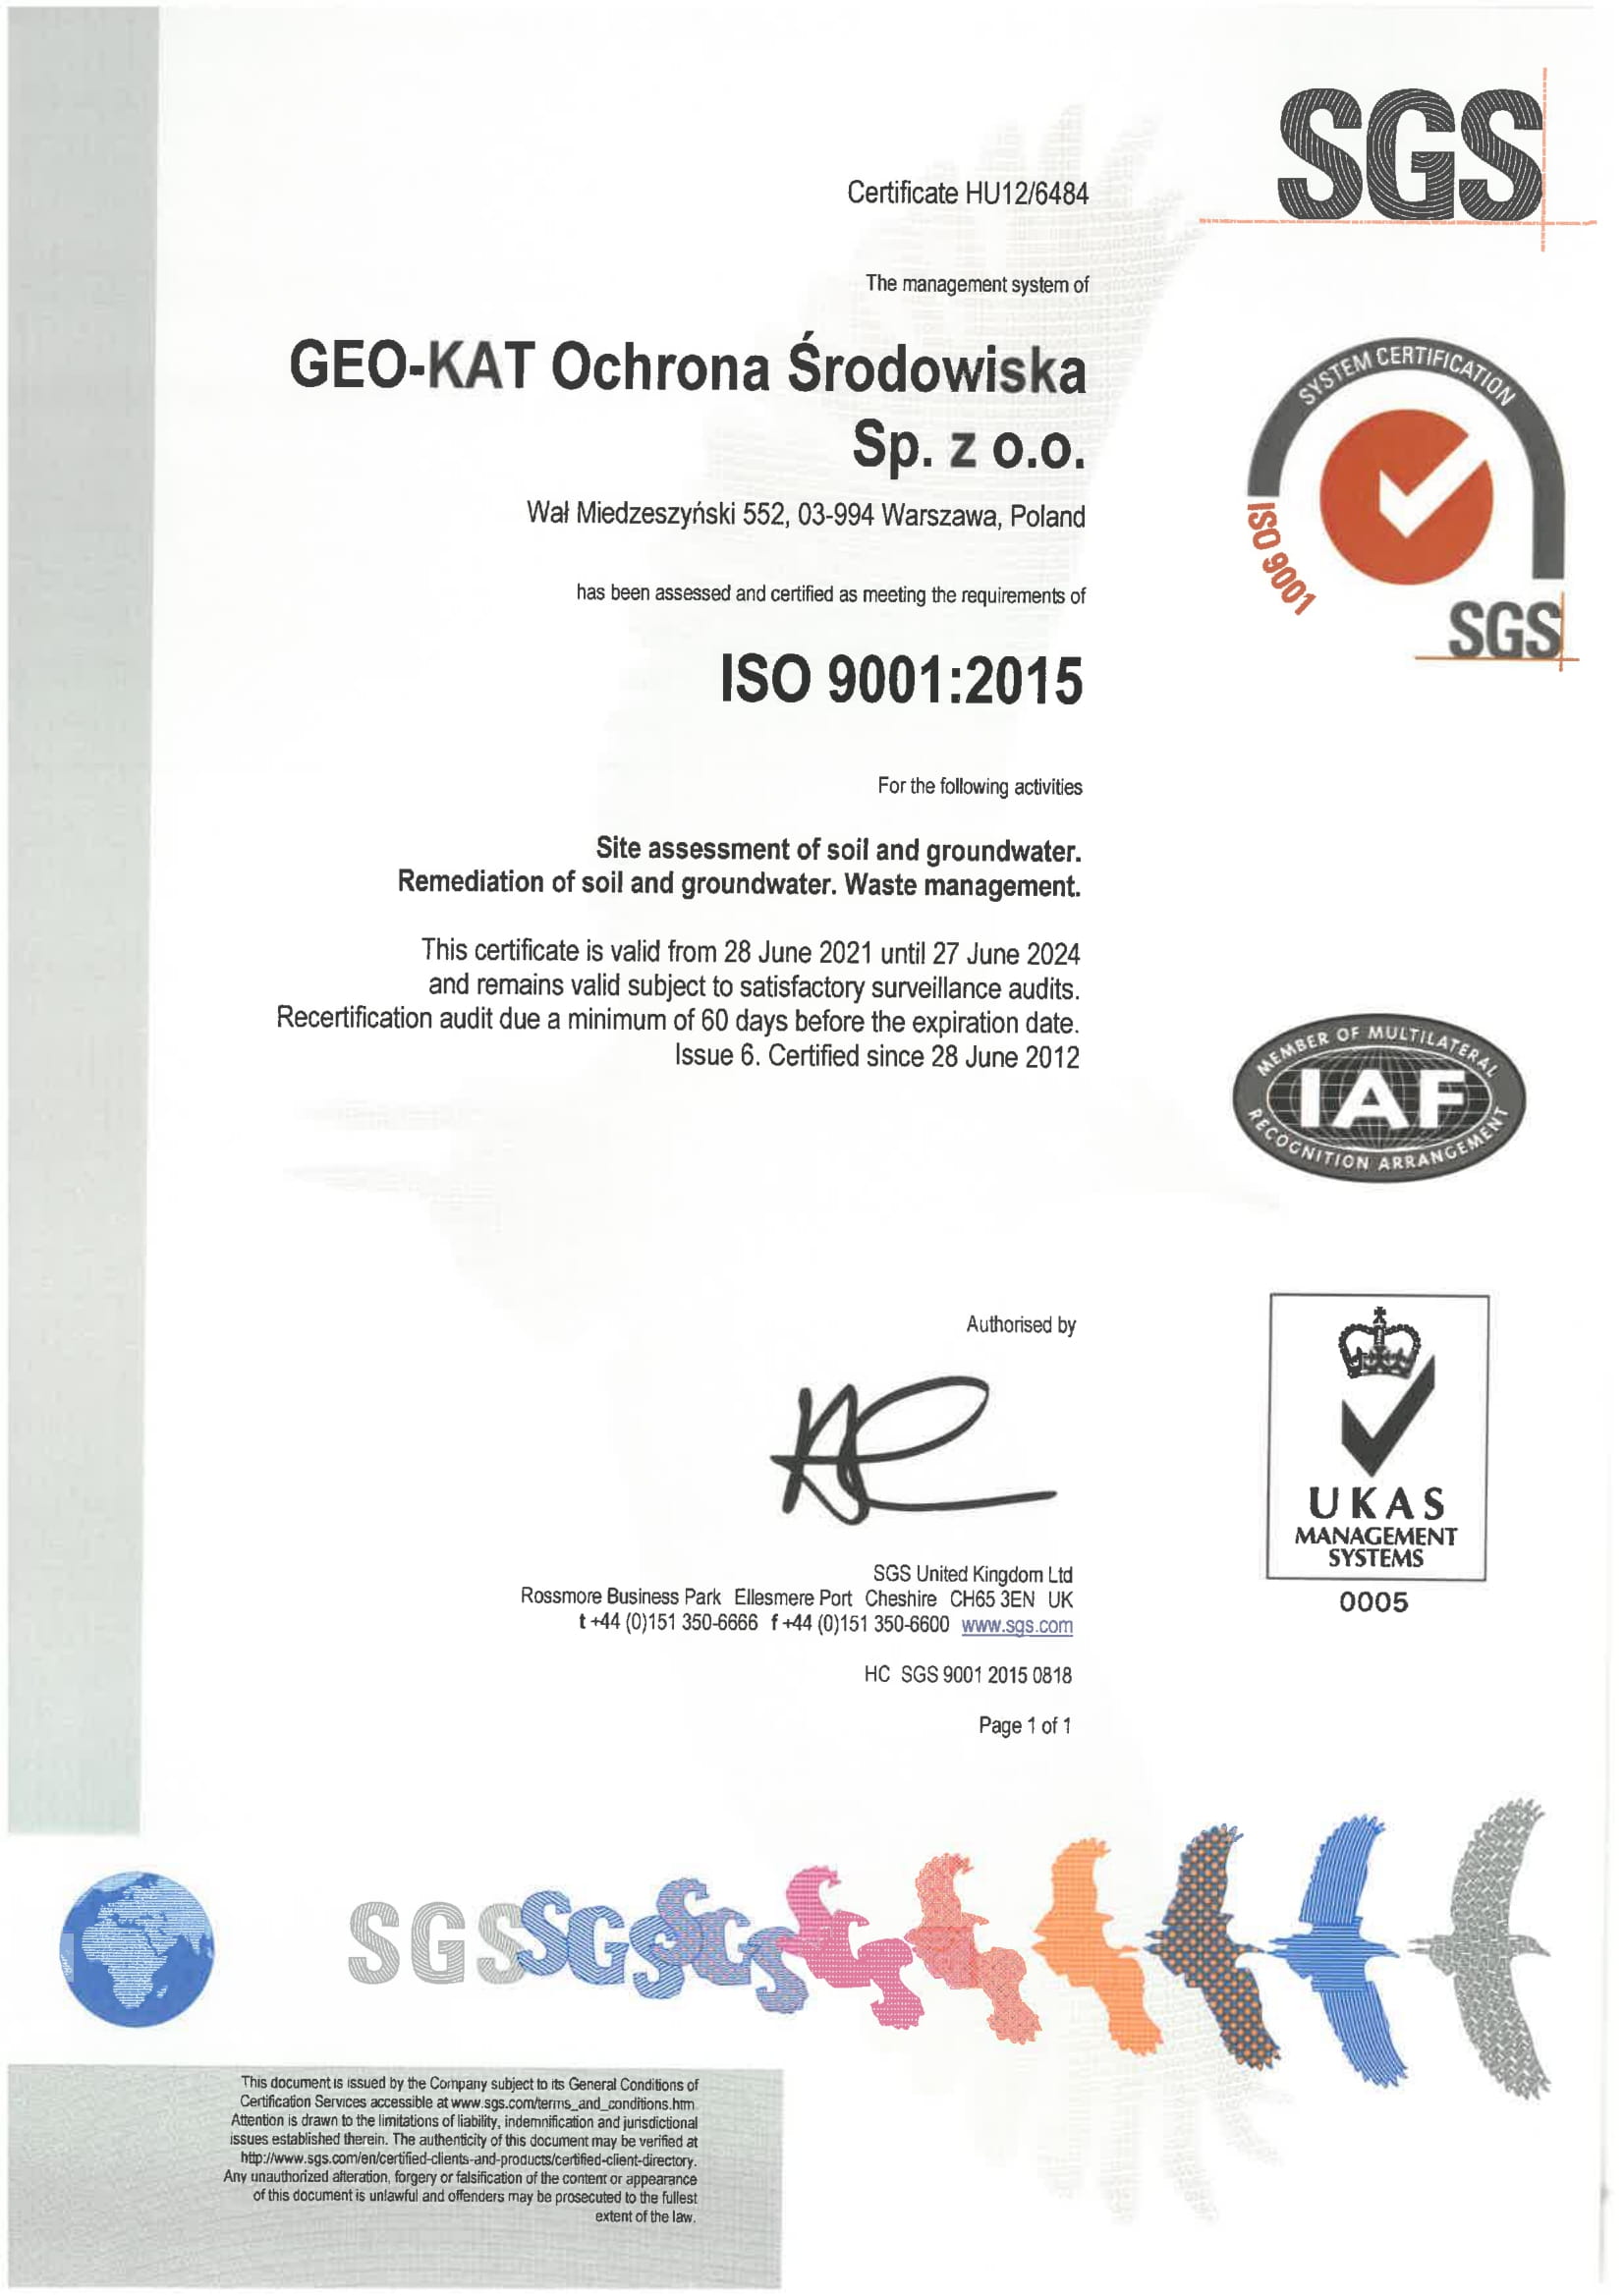 GEO-KAT Ochrona Środowiska Sp. z o.o. – ISO 9001:2015